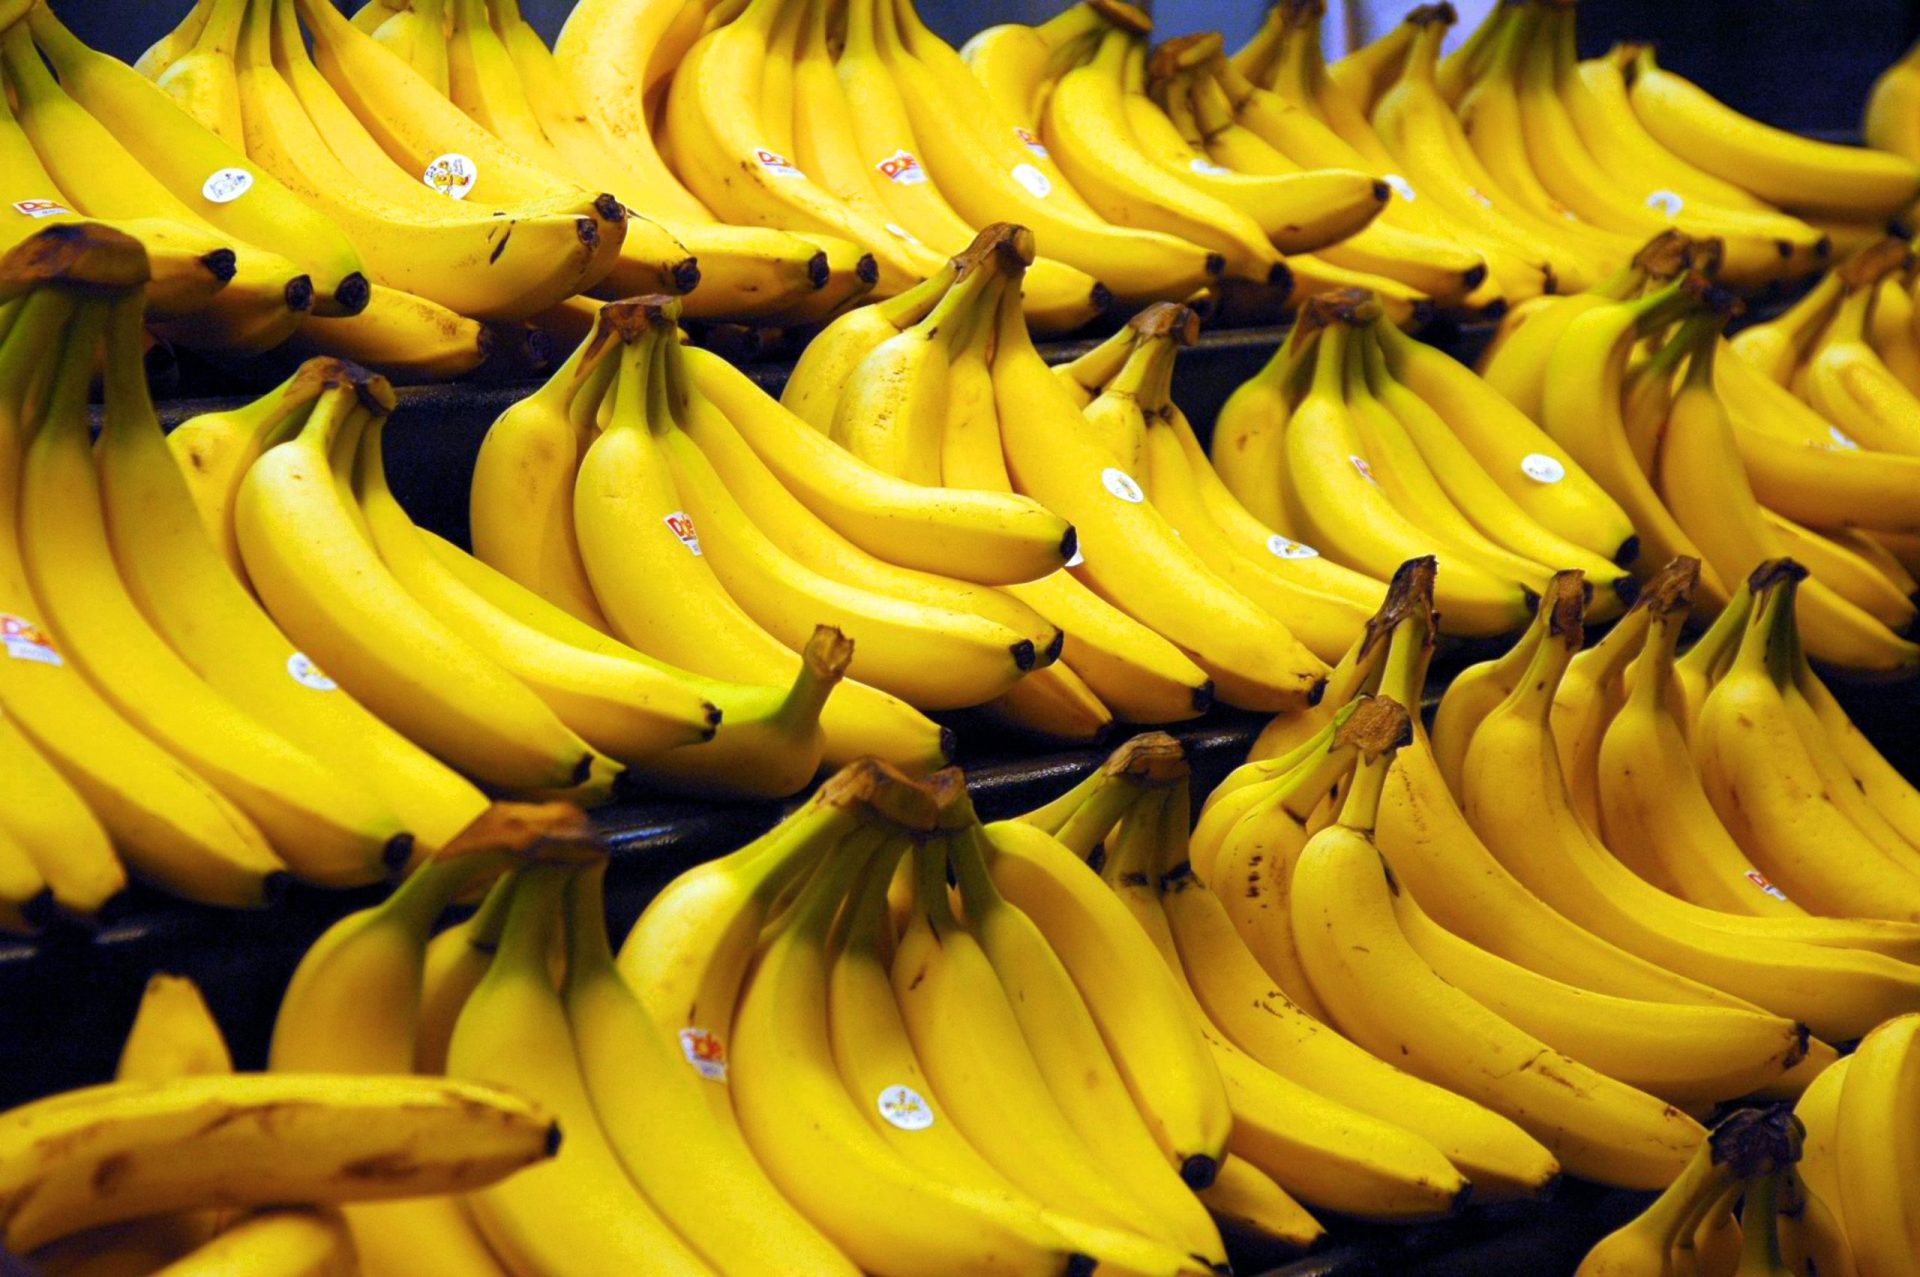 Cocaína dissimulada em bananas